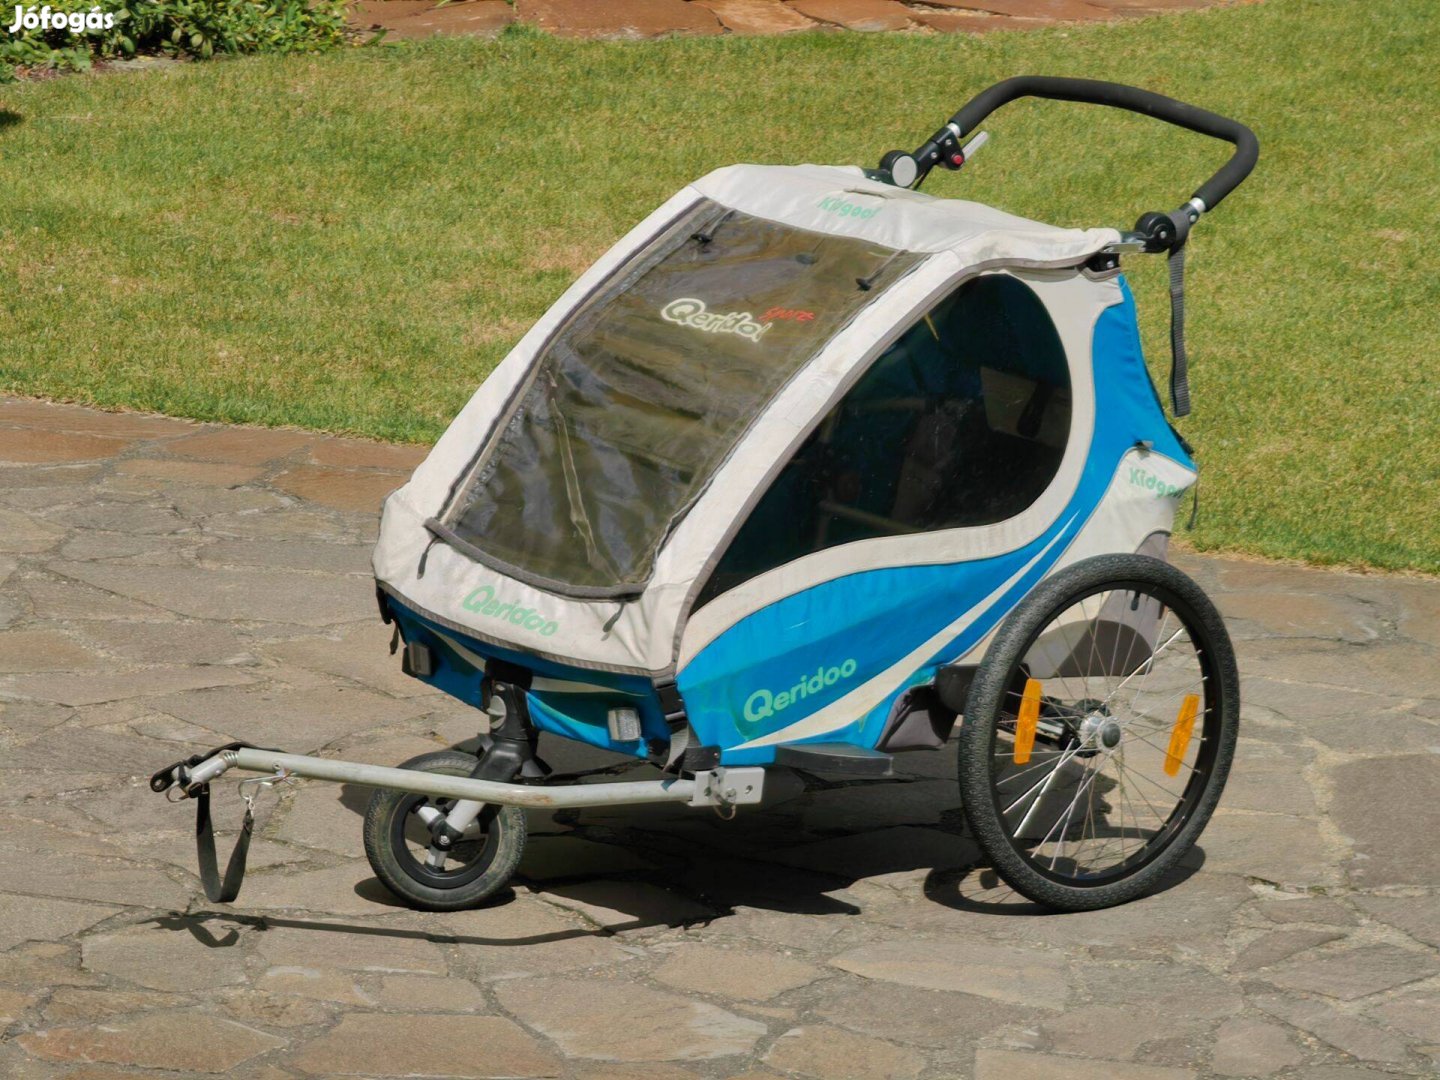 Kerékpár utánfutó bicikli gyerek szállító Qeridoo 2 prémium modell